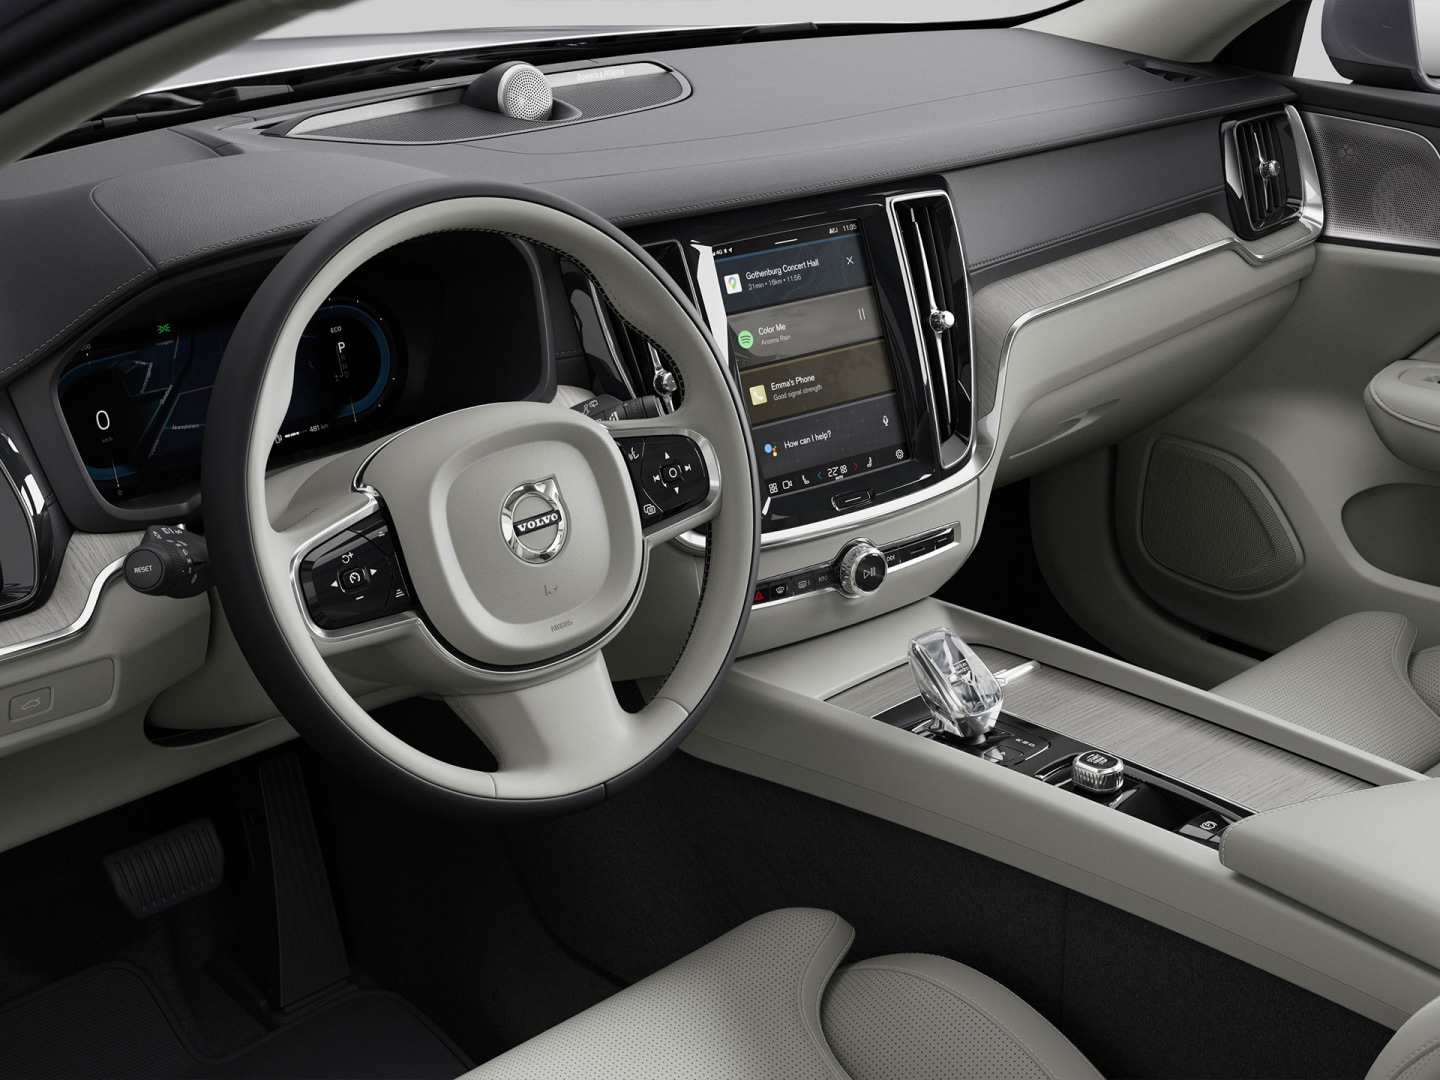 Utasoldali nézet a Volvo V60 mild hibrid kormánykerekéről, műszerfaláról, szellőzőnyílásairól és infotainment érintőképernyőjéről.